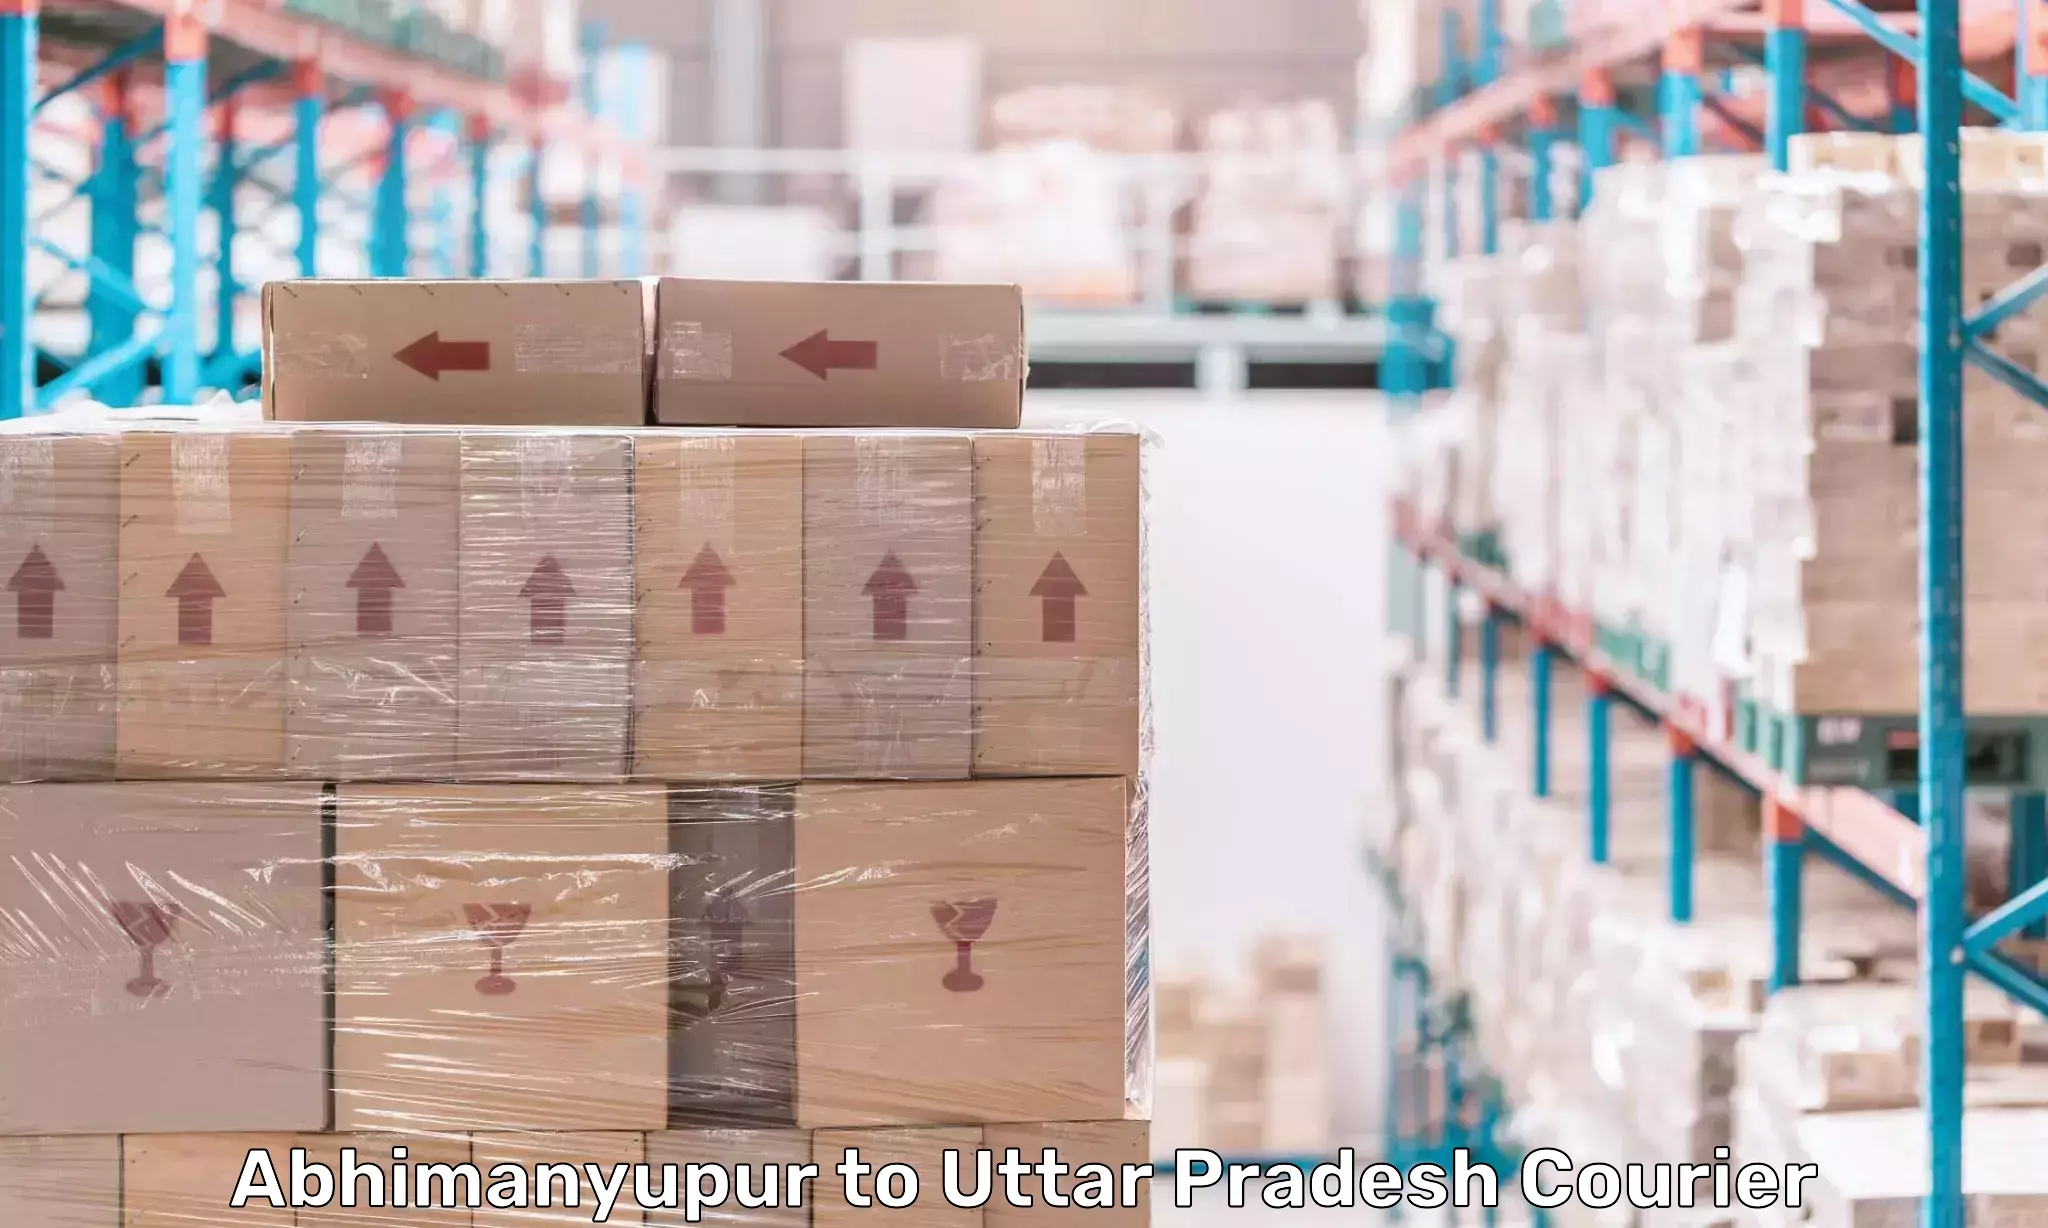 Modern parcel services Abhimanyupur to Uttar Pradesh